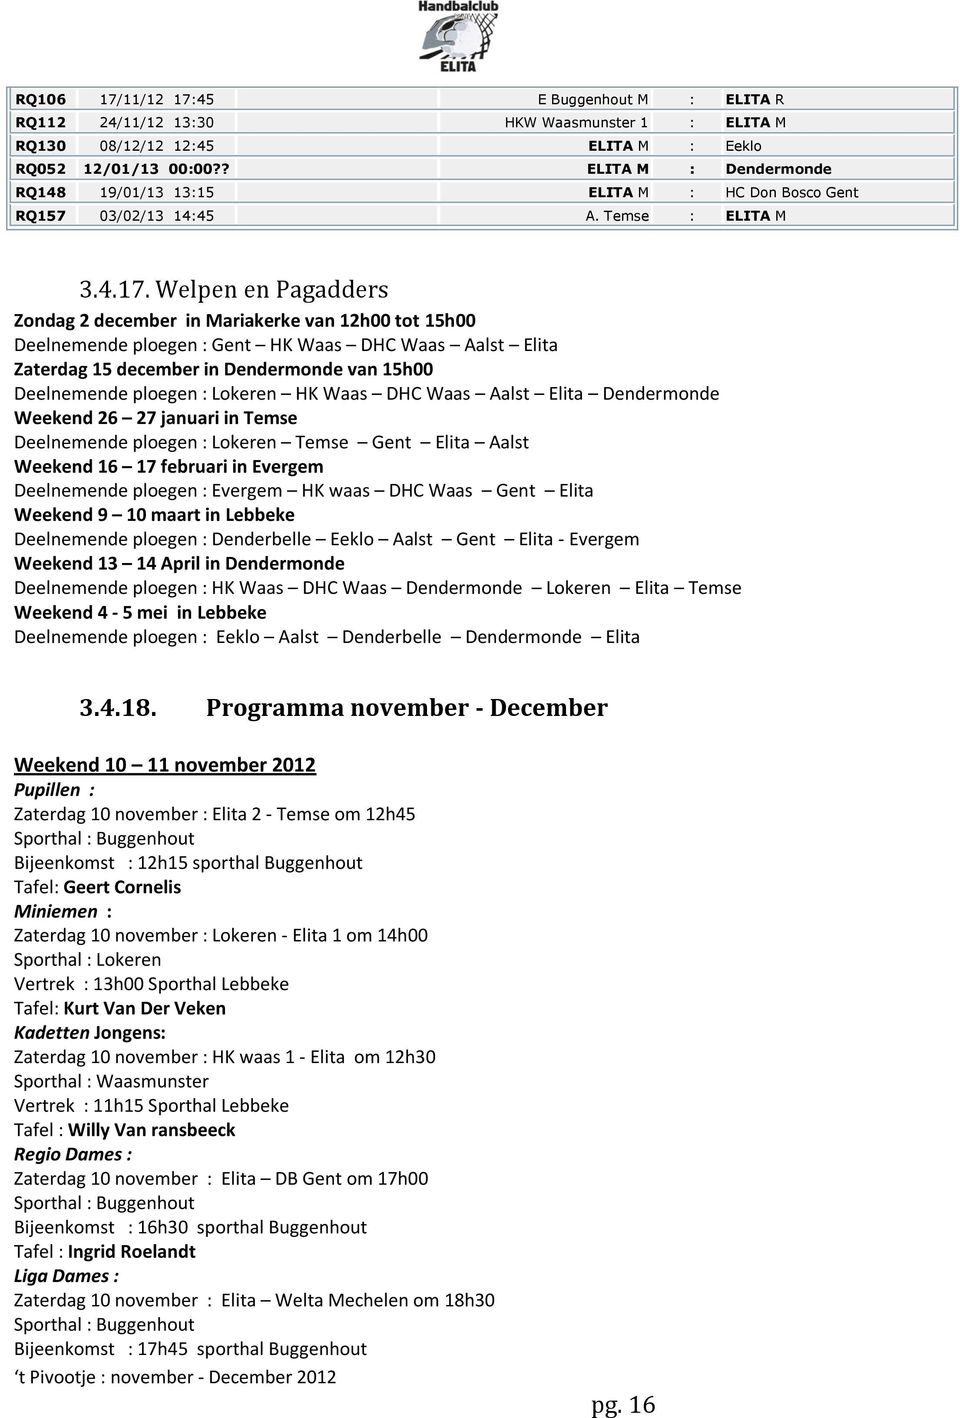 Welpen en Pagadders Zondag 2 december in Mariakerke van 12h00 tot 15h00 Deelnemende ploegen : Gent HK Waas DHC Waas Aalst Elita Zaterdag 15 december in Dendermonde van 15h00 Deelnemende ploegen :